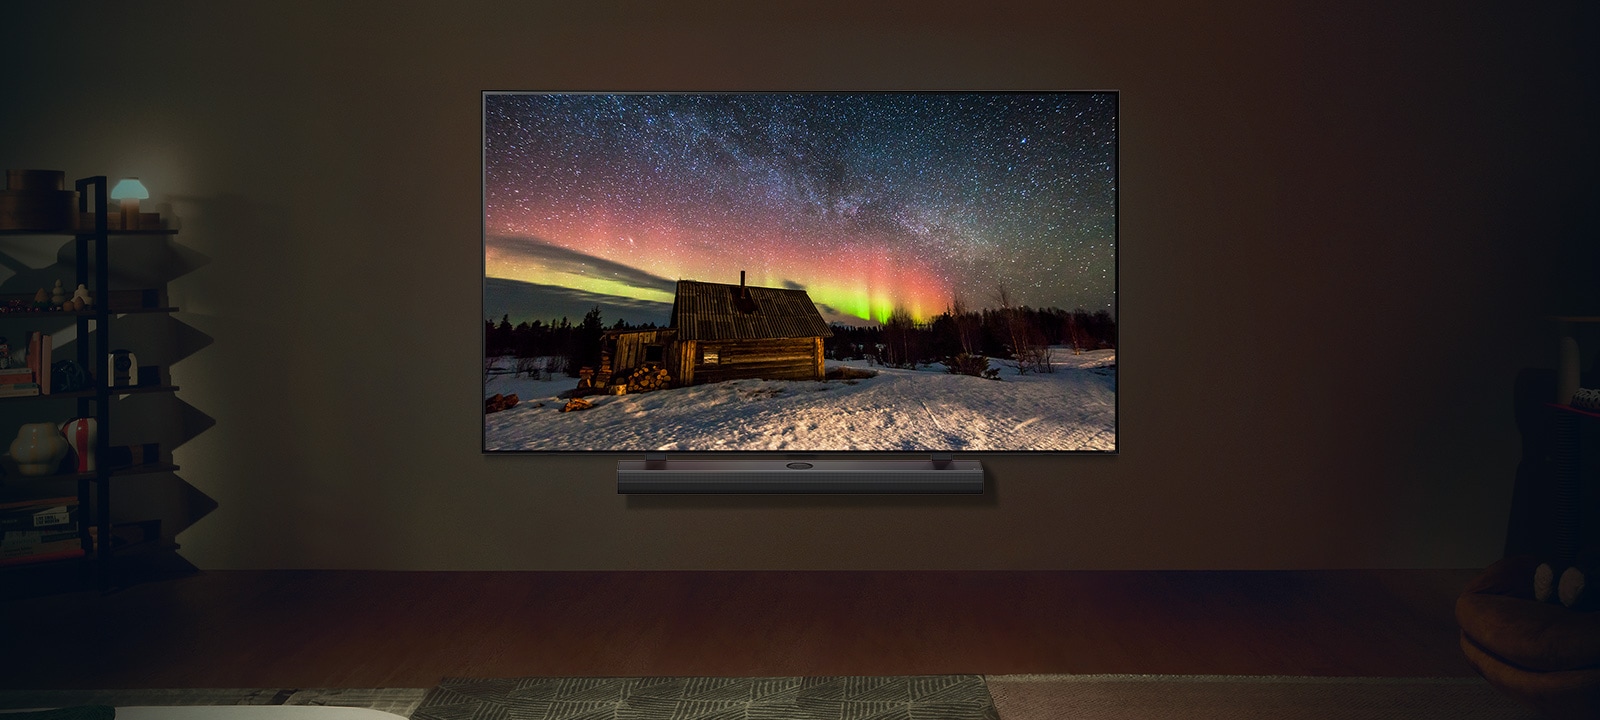 Le TV LG et la barre de son LG* dans un espace de vie moderne de nuit. L’image à l’écran d’une aurore boréale est affichée, avec des niveaux de luminosité idéals.